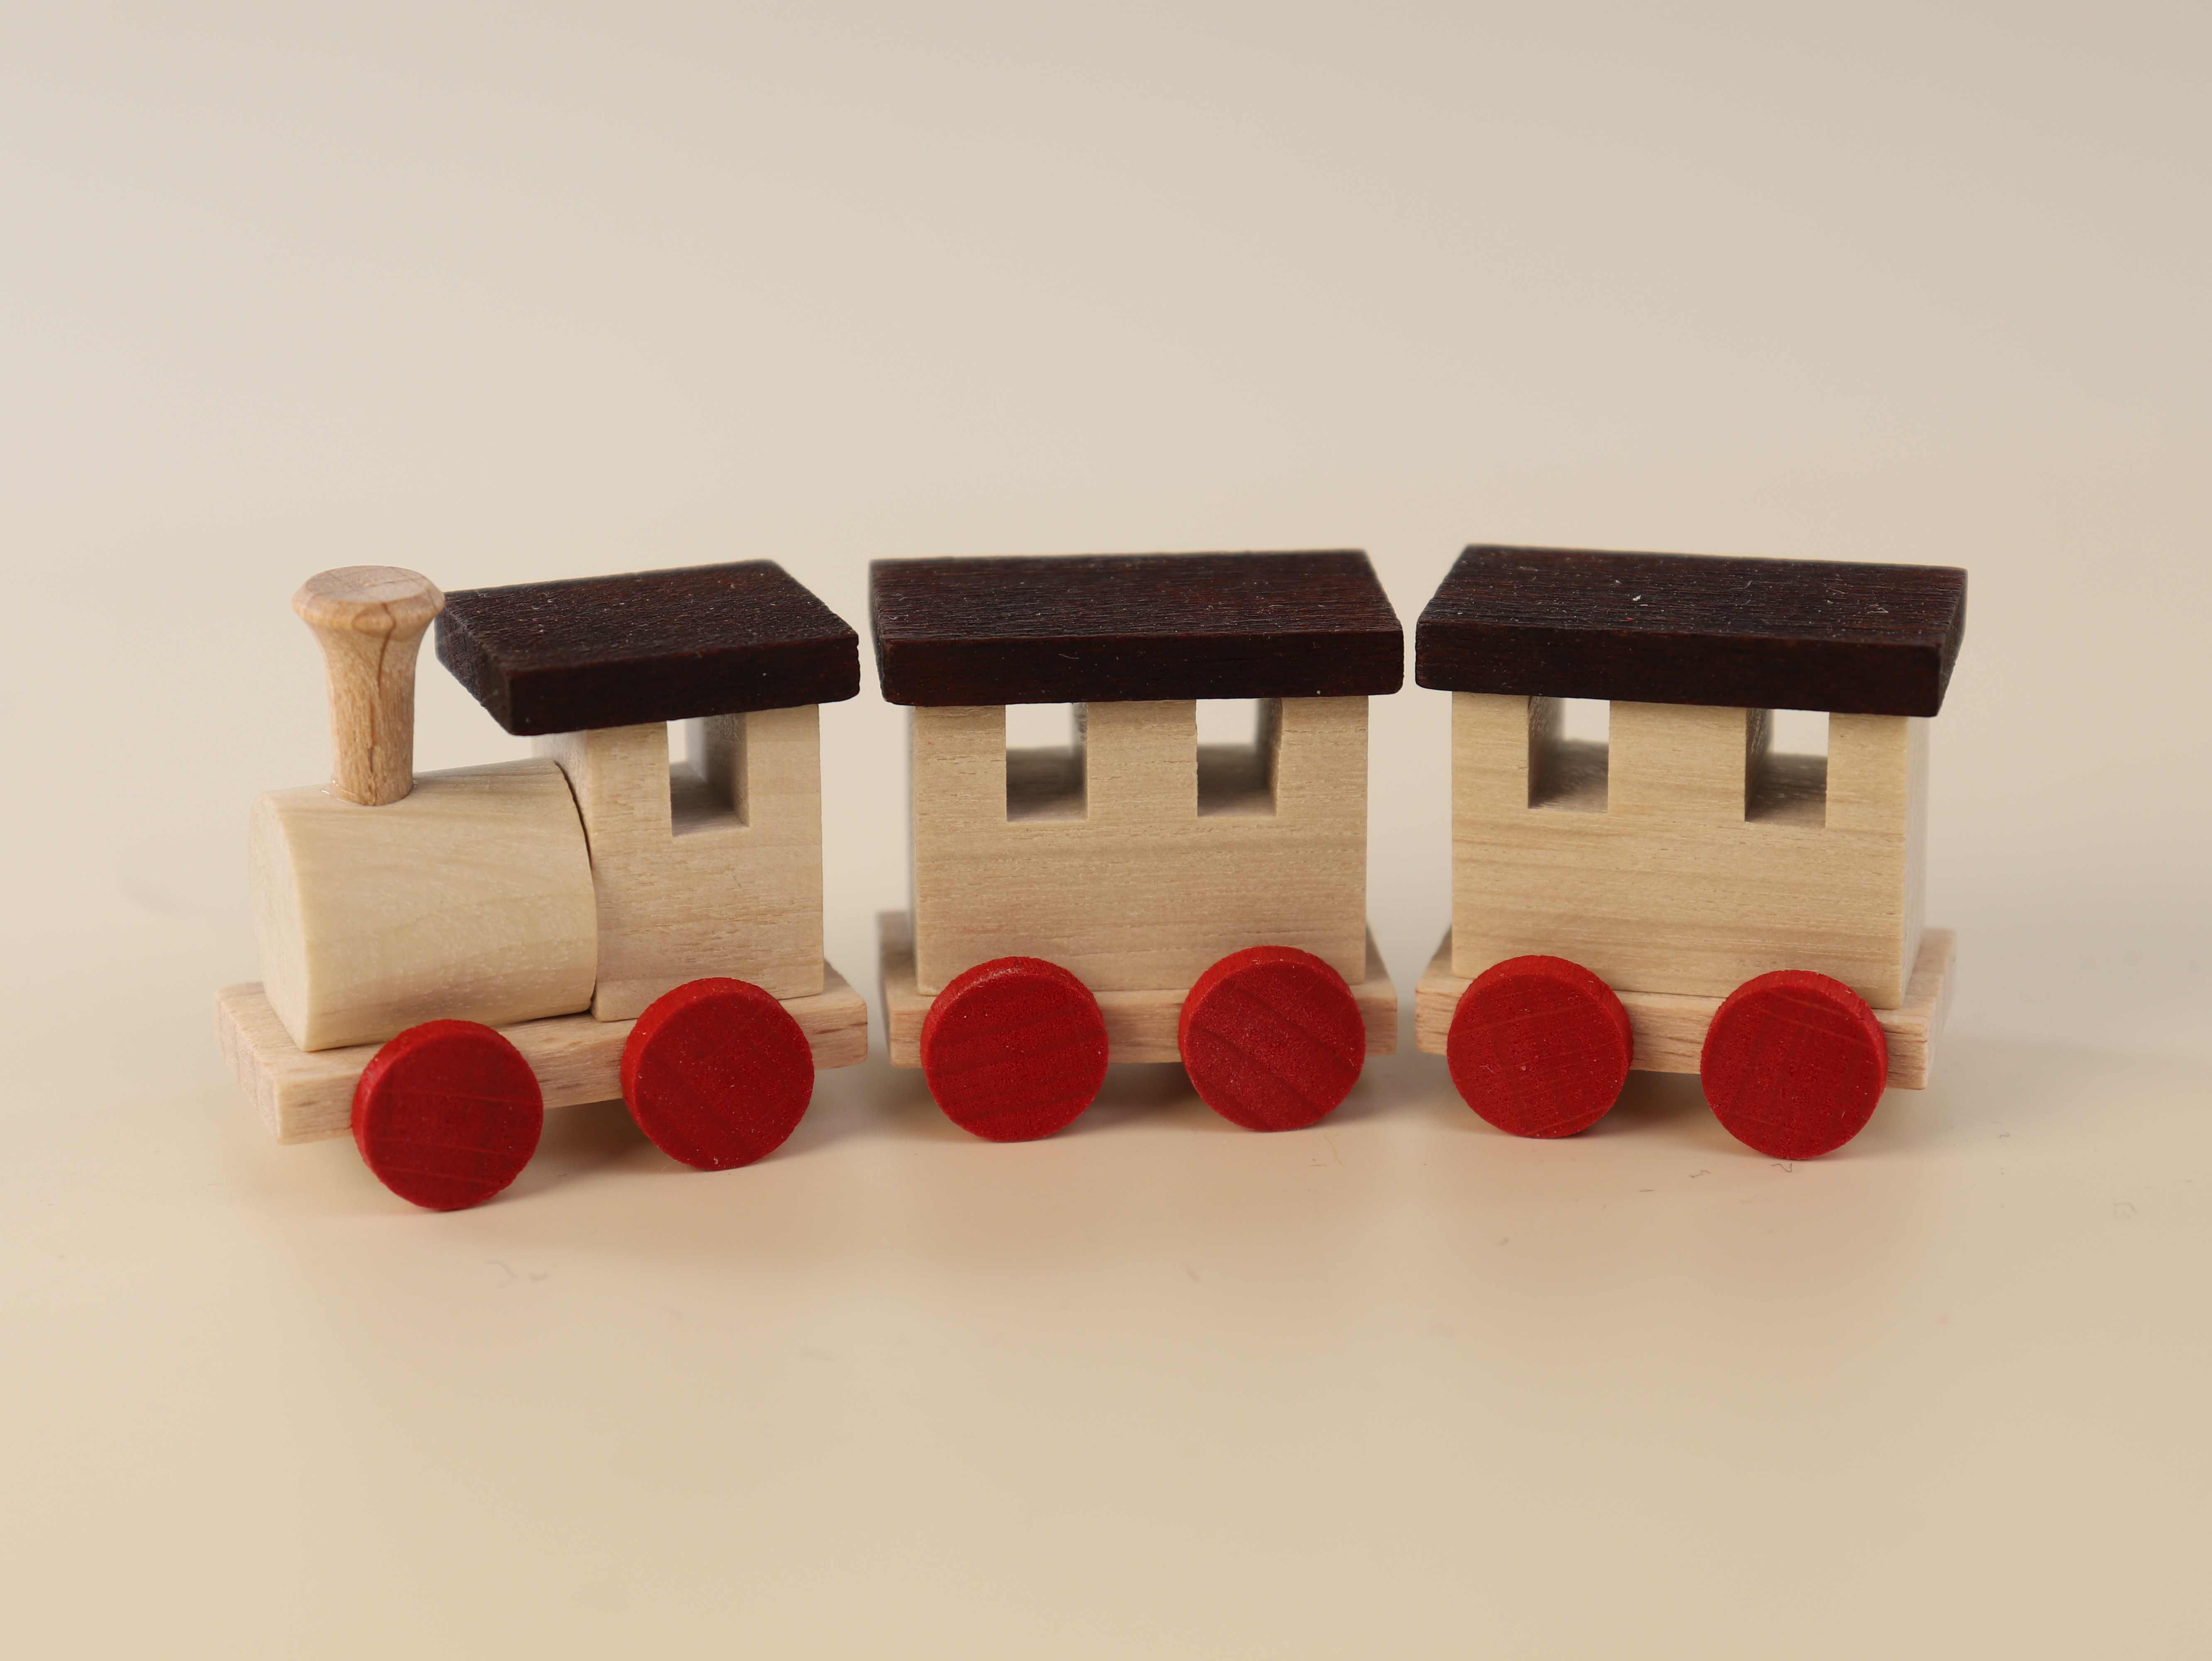 Holz-Eisenbahn klein (7 cm) mit 2 Waggons als Tischdekoration